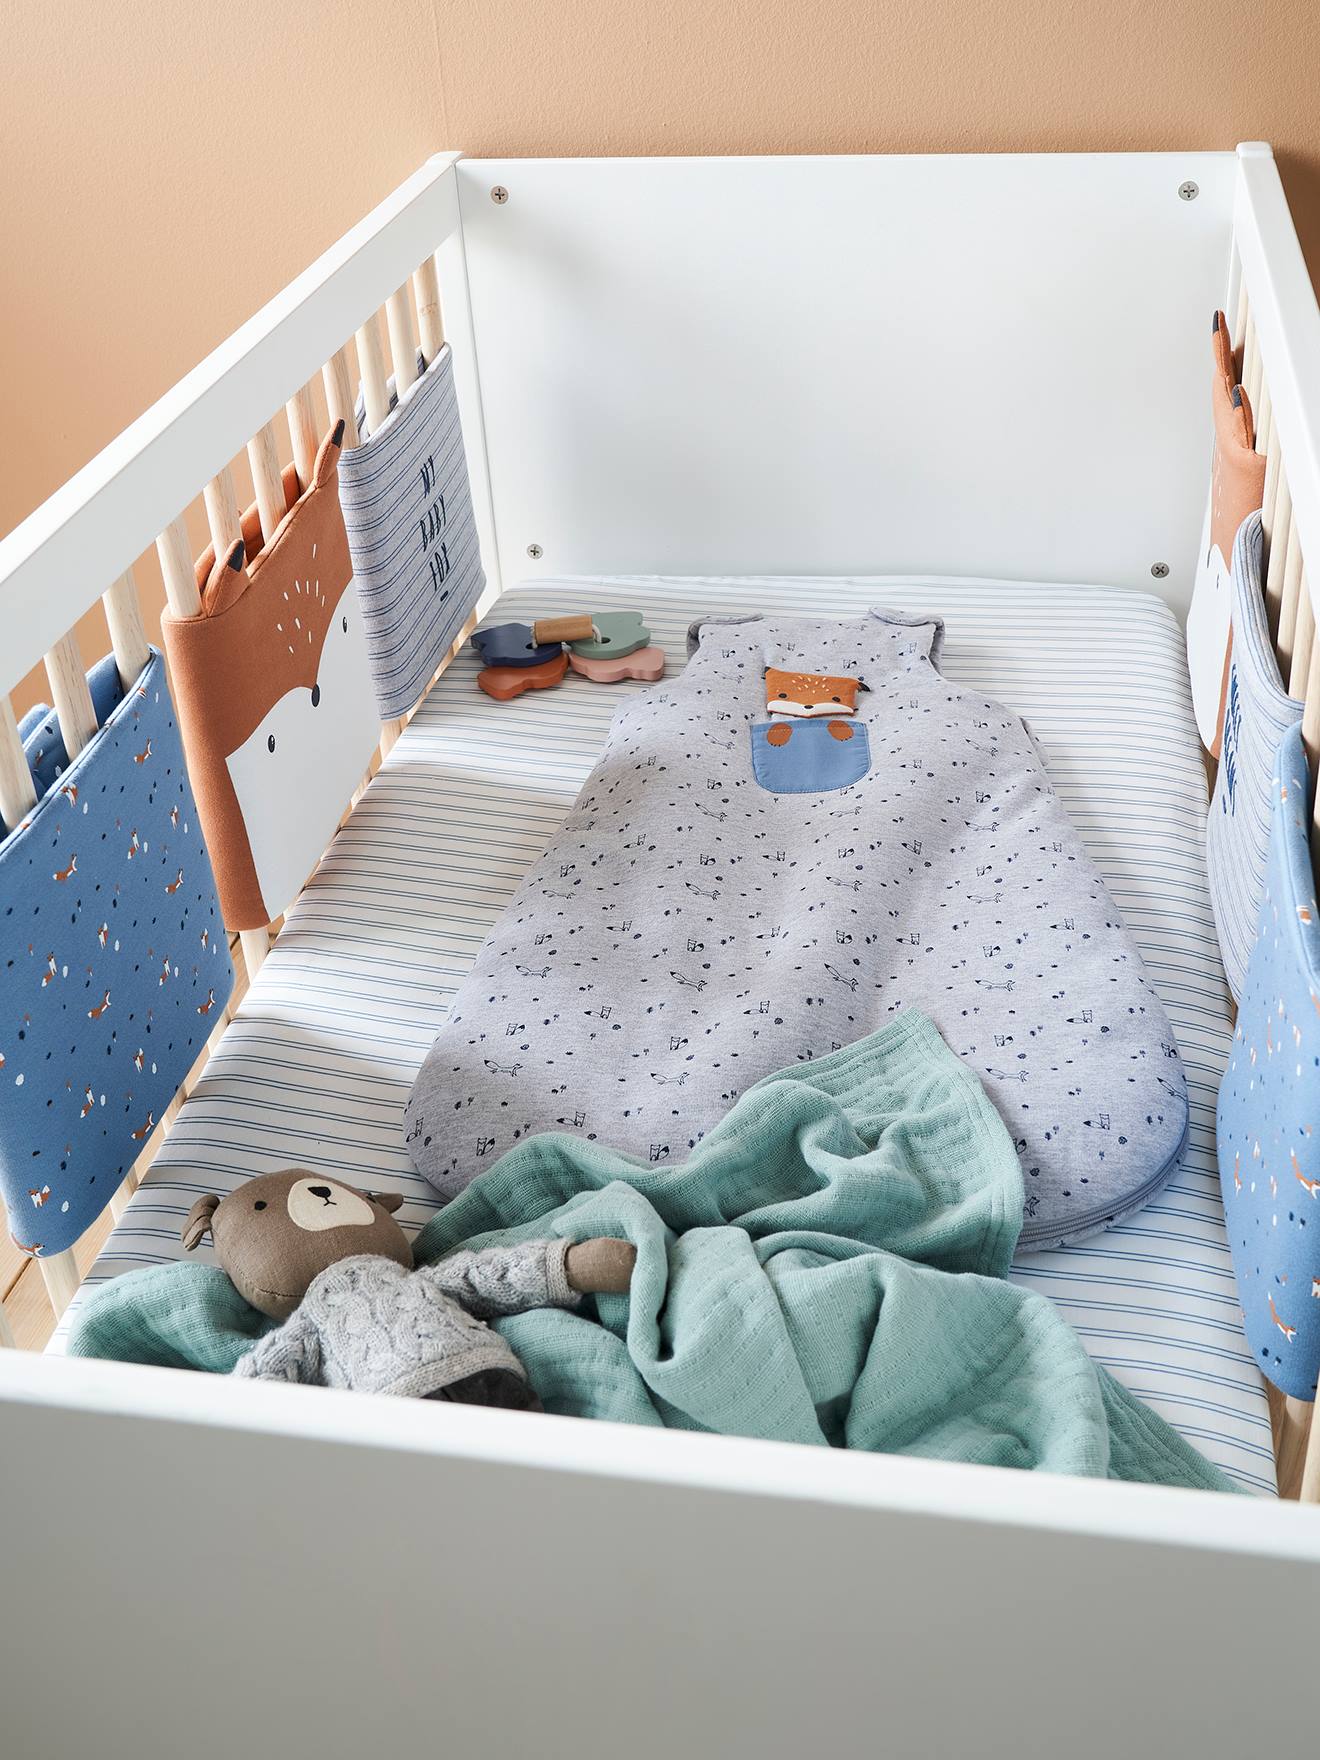 Tour de lit bébé Le lit de bébé entoure le pare-chocs de lit pare-chocs